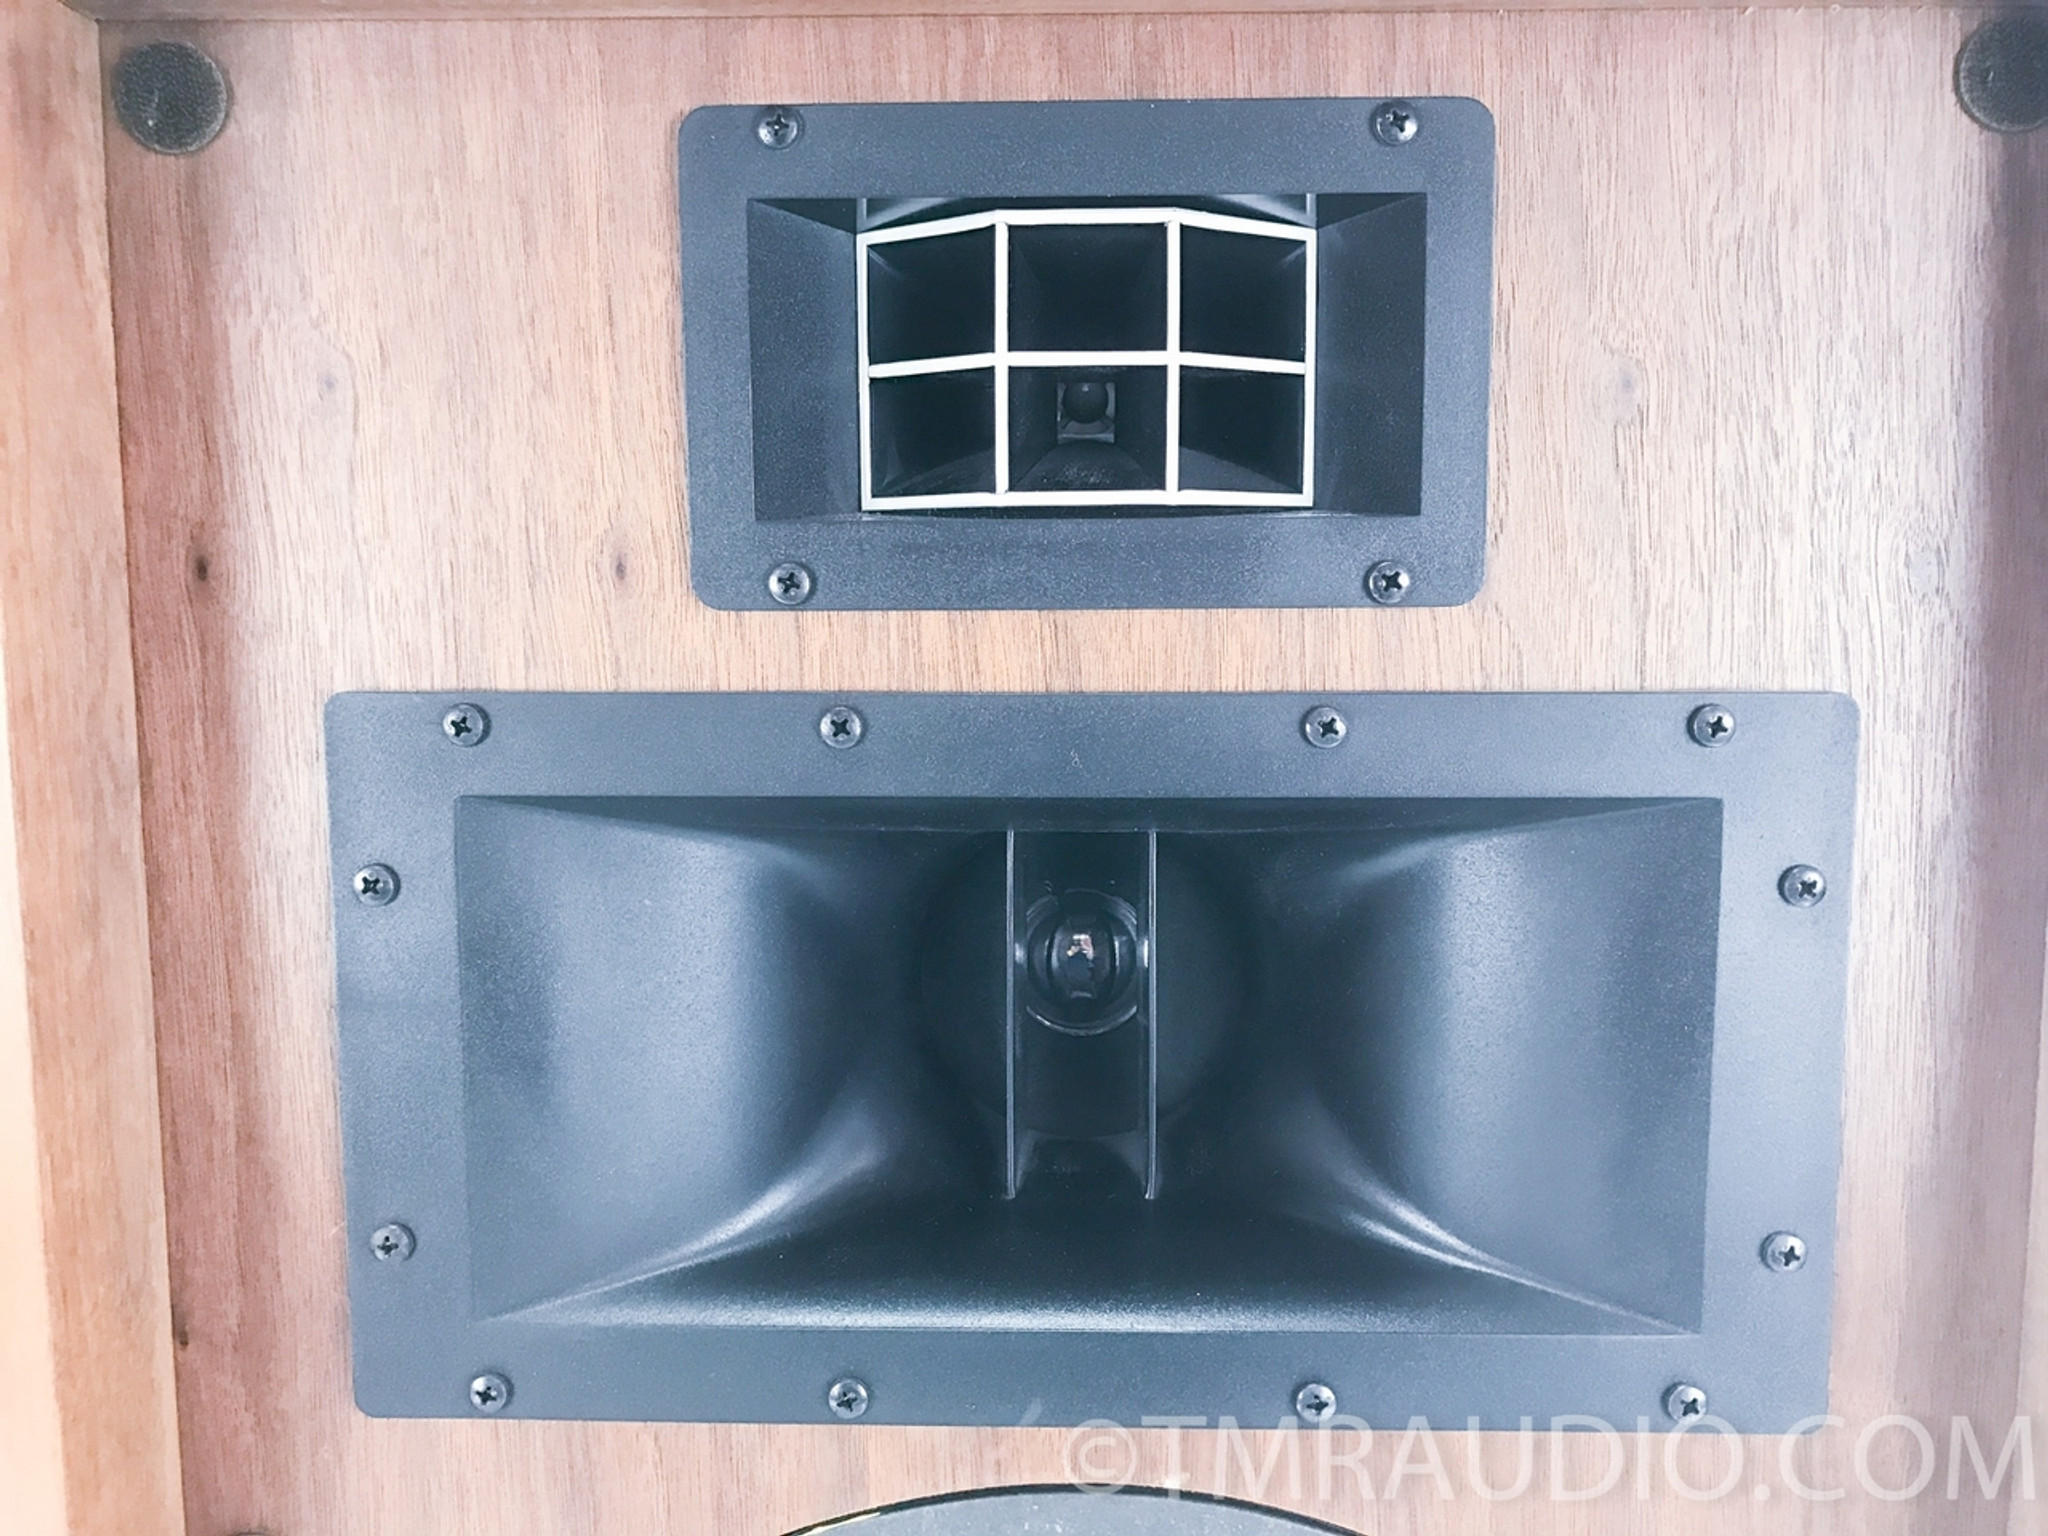 Pioneer CS-701 Vintage Speakers; Factory Boxes